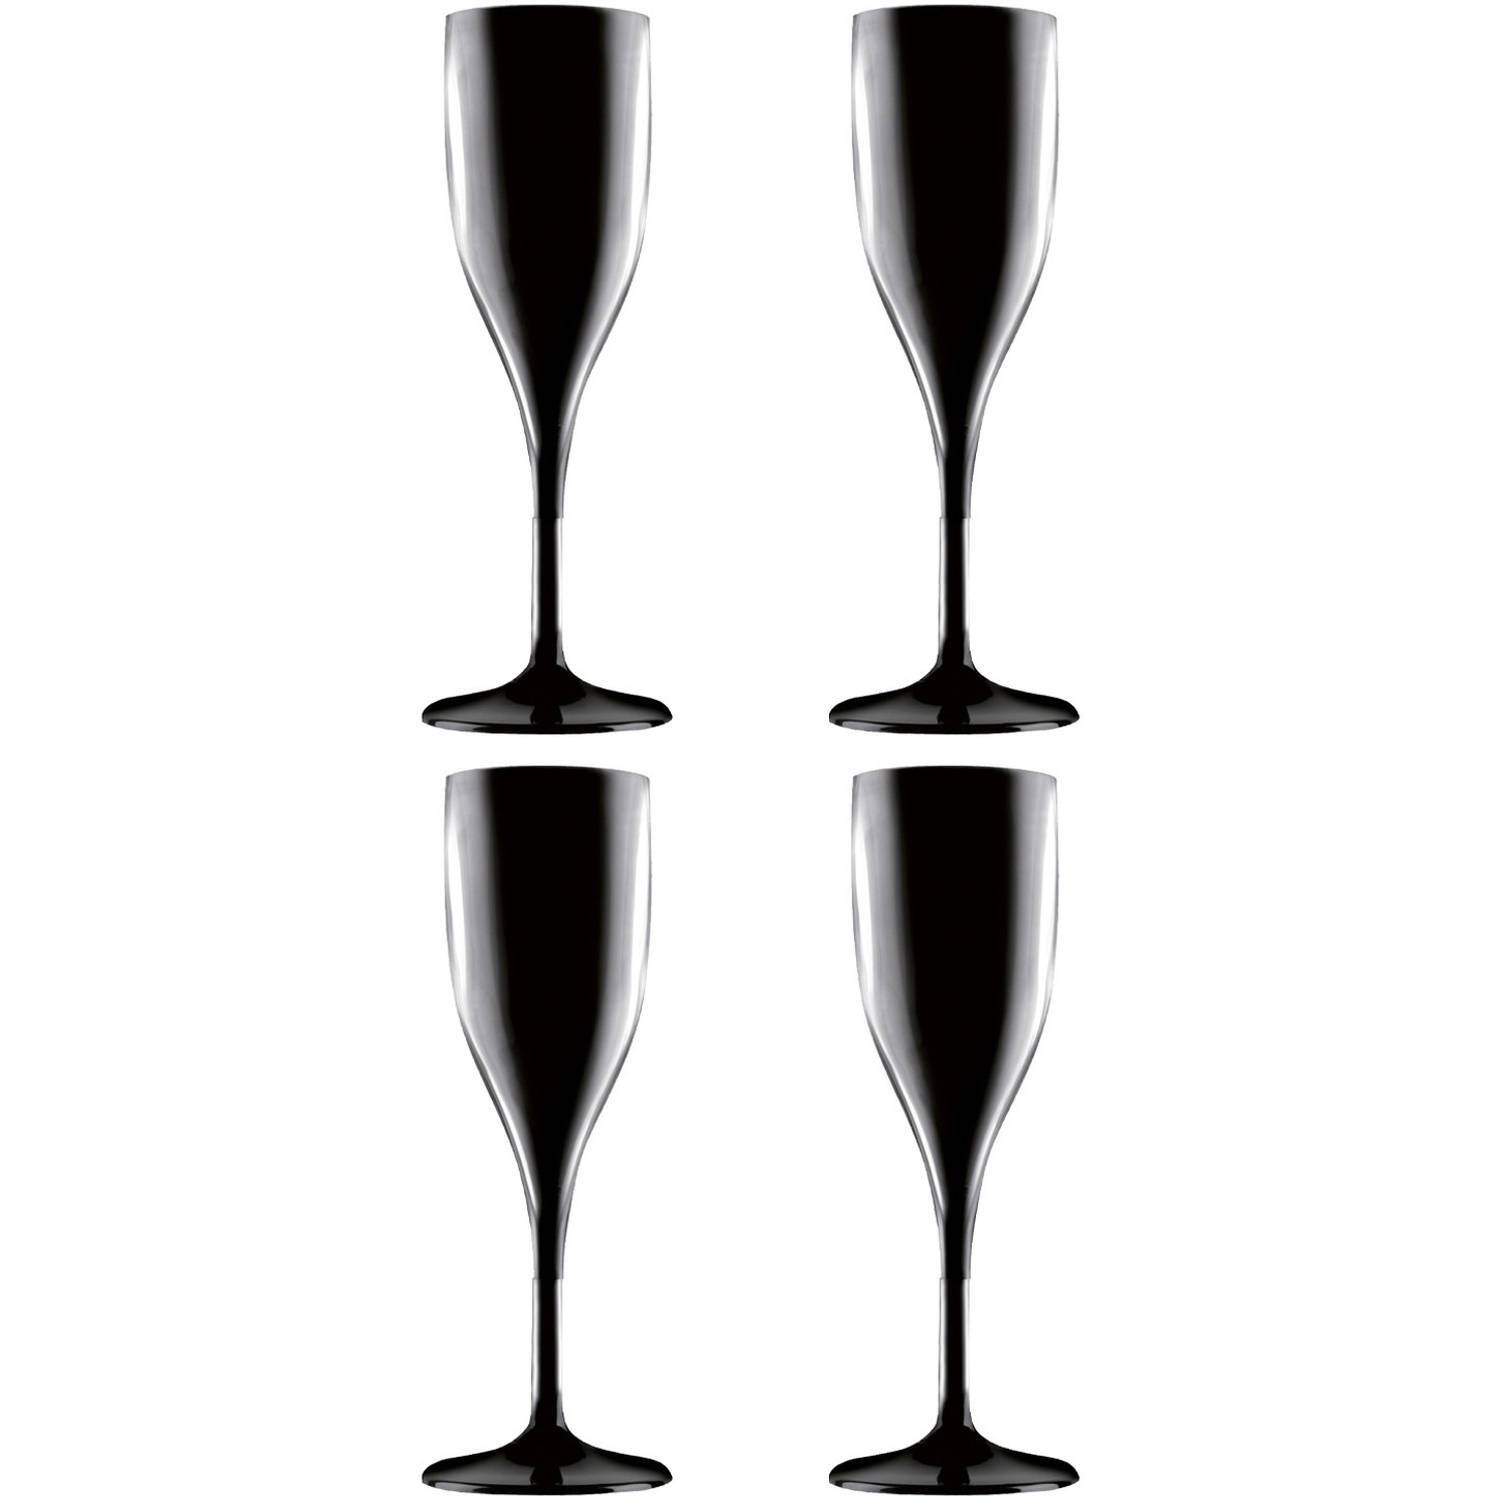 Santex Set van 4x stuks champagneglazen/prosecco flutes zwart 150 ml onbreekbaar herbruikbaar kunststof - Champagne serveren - Champagneflutes - Champagneglazen